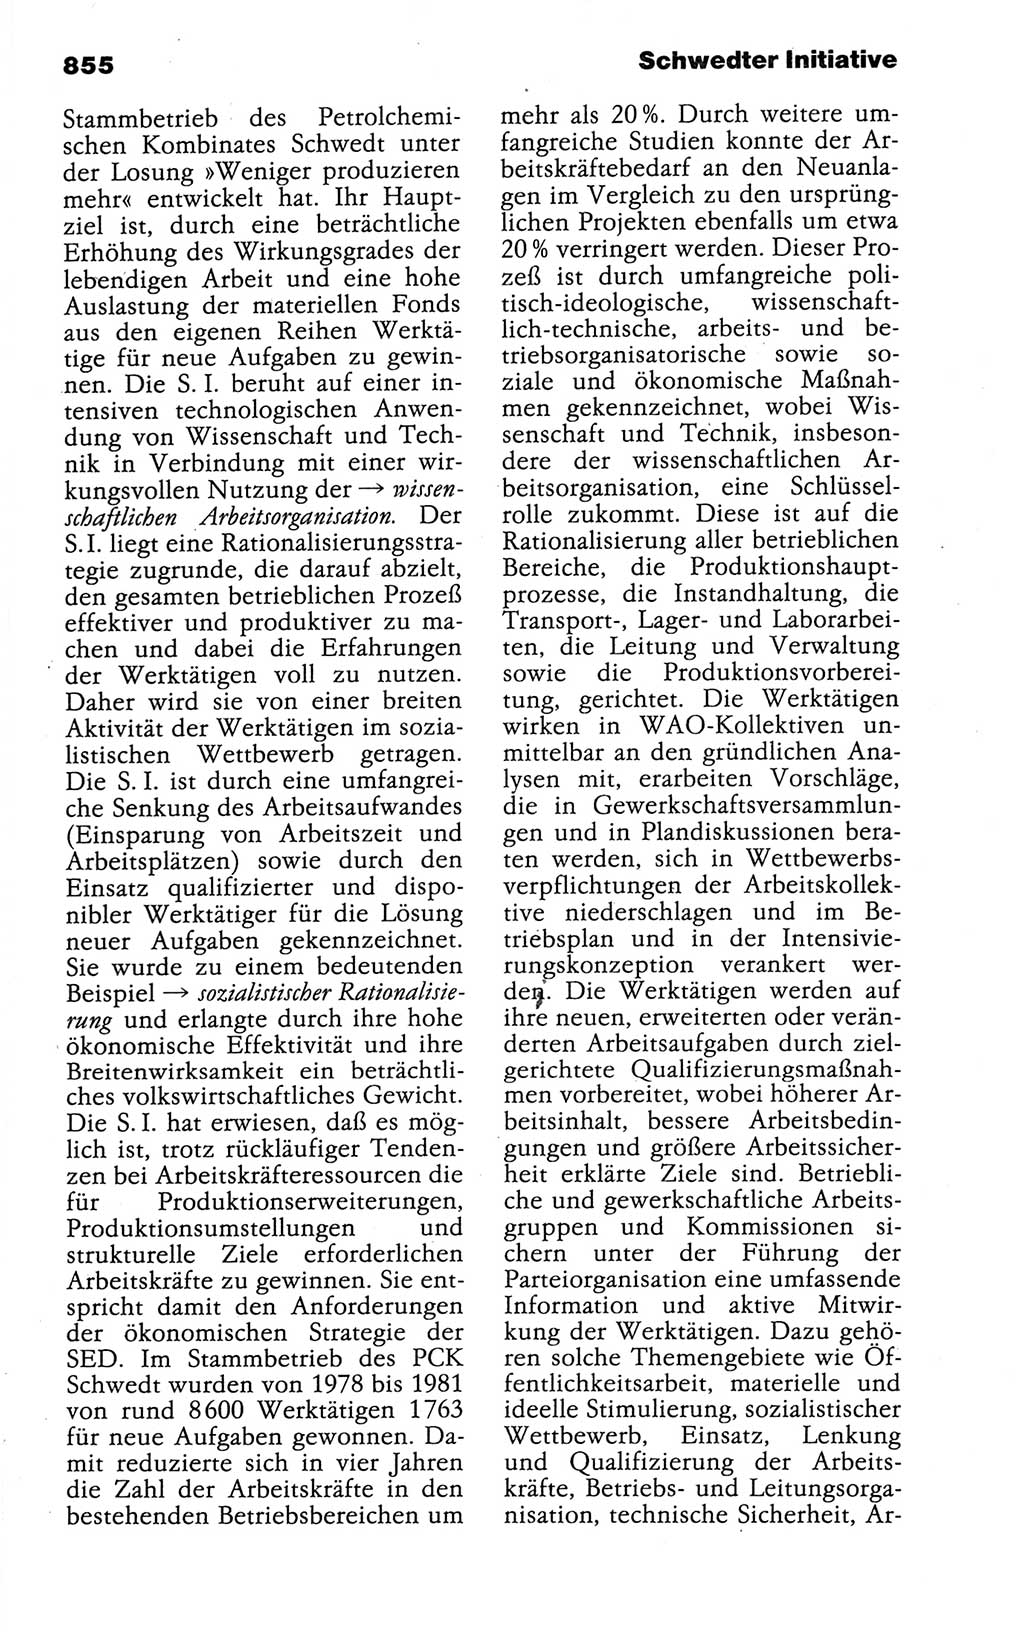 Kleines politisches Wörterbuch [Deutsche Demokratische Republik (DDR)] 1988, Seite 855 (Kl. pol. Wb. DDR 1988, S. 855)